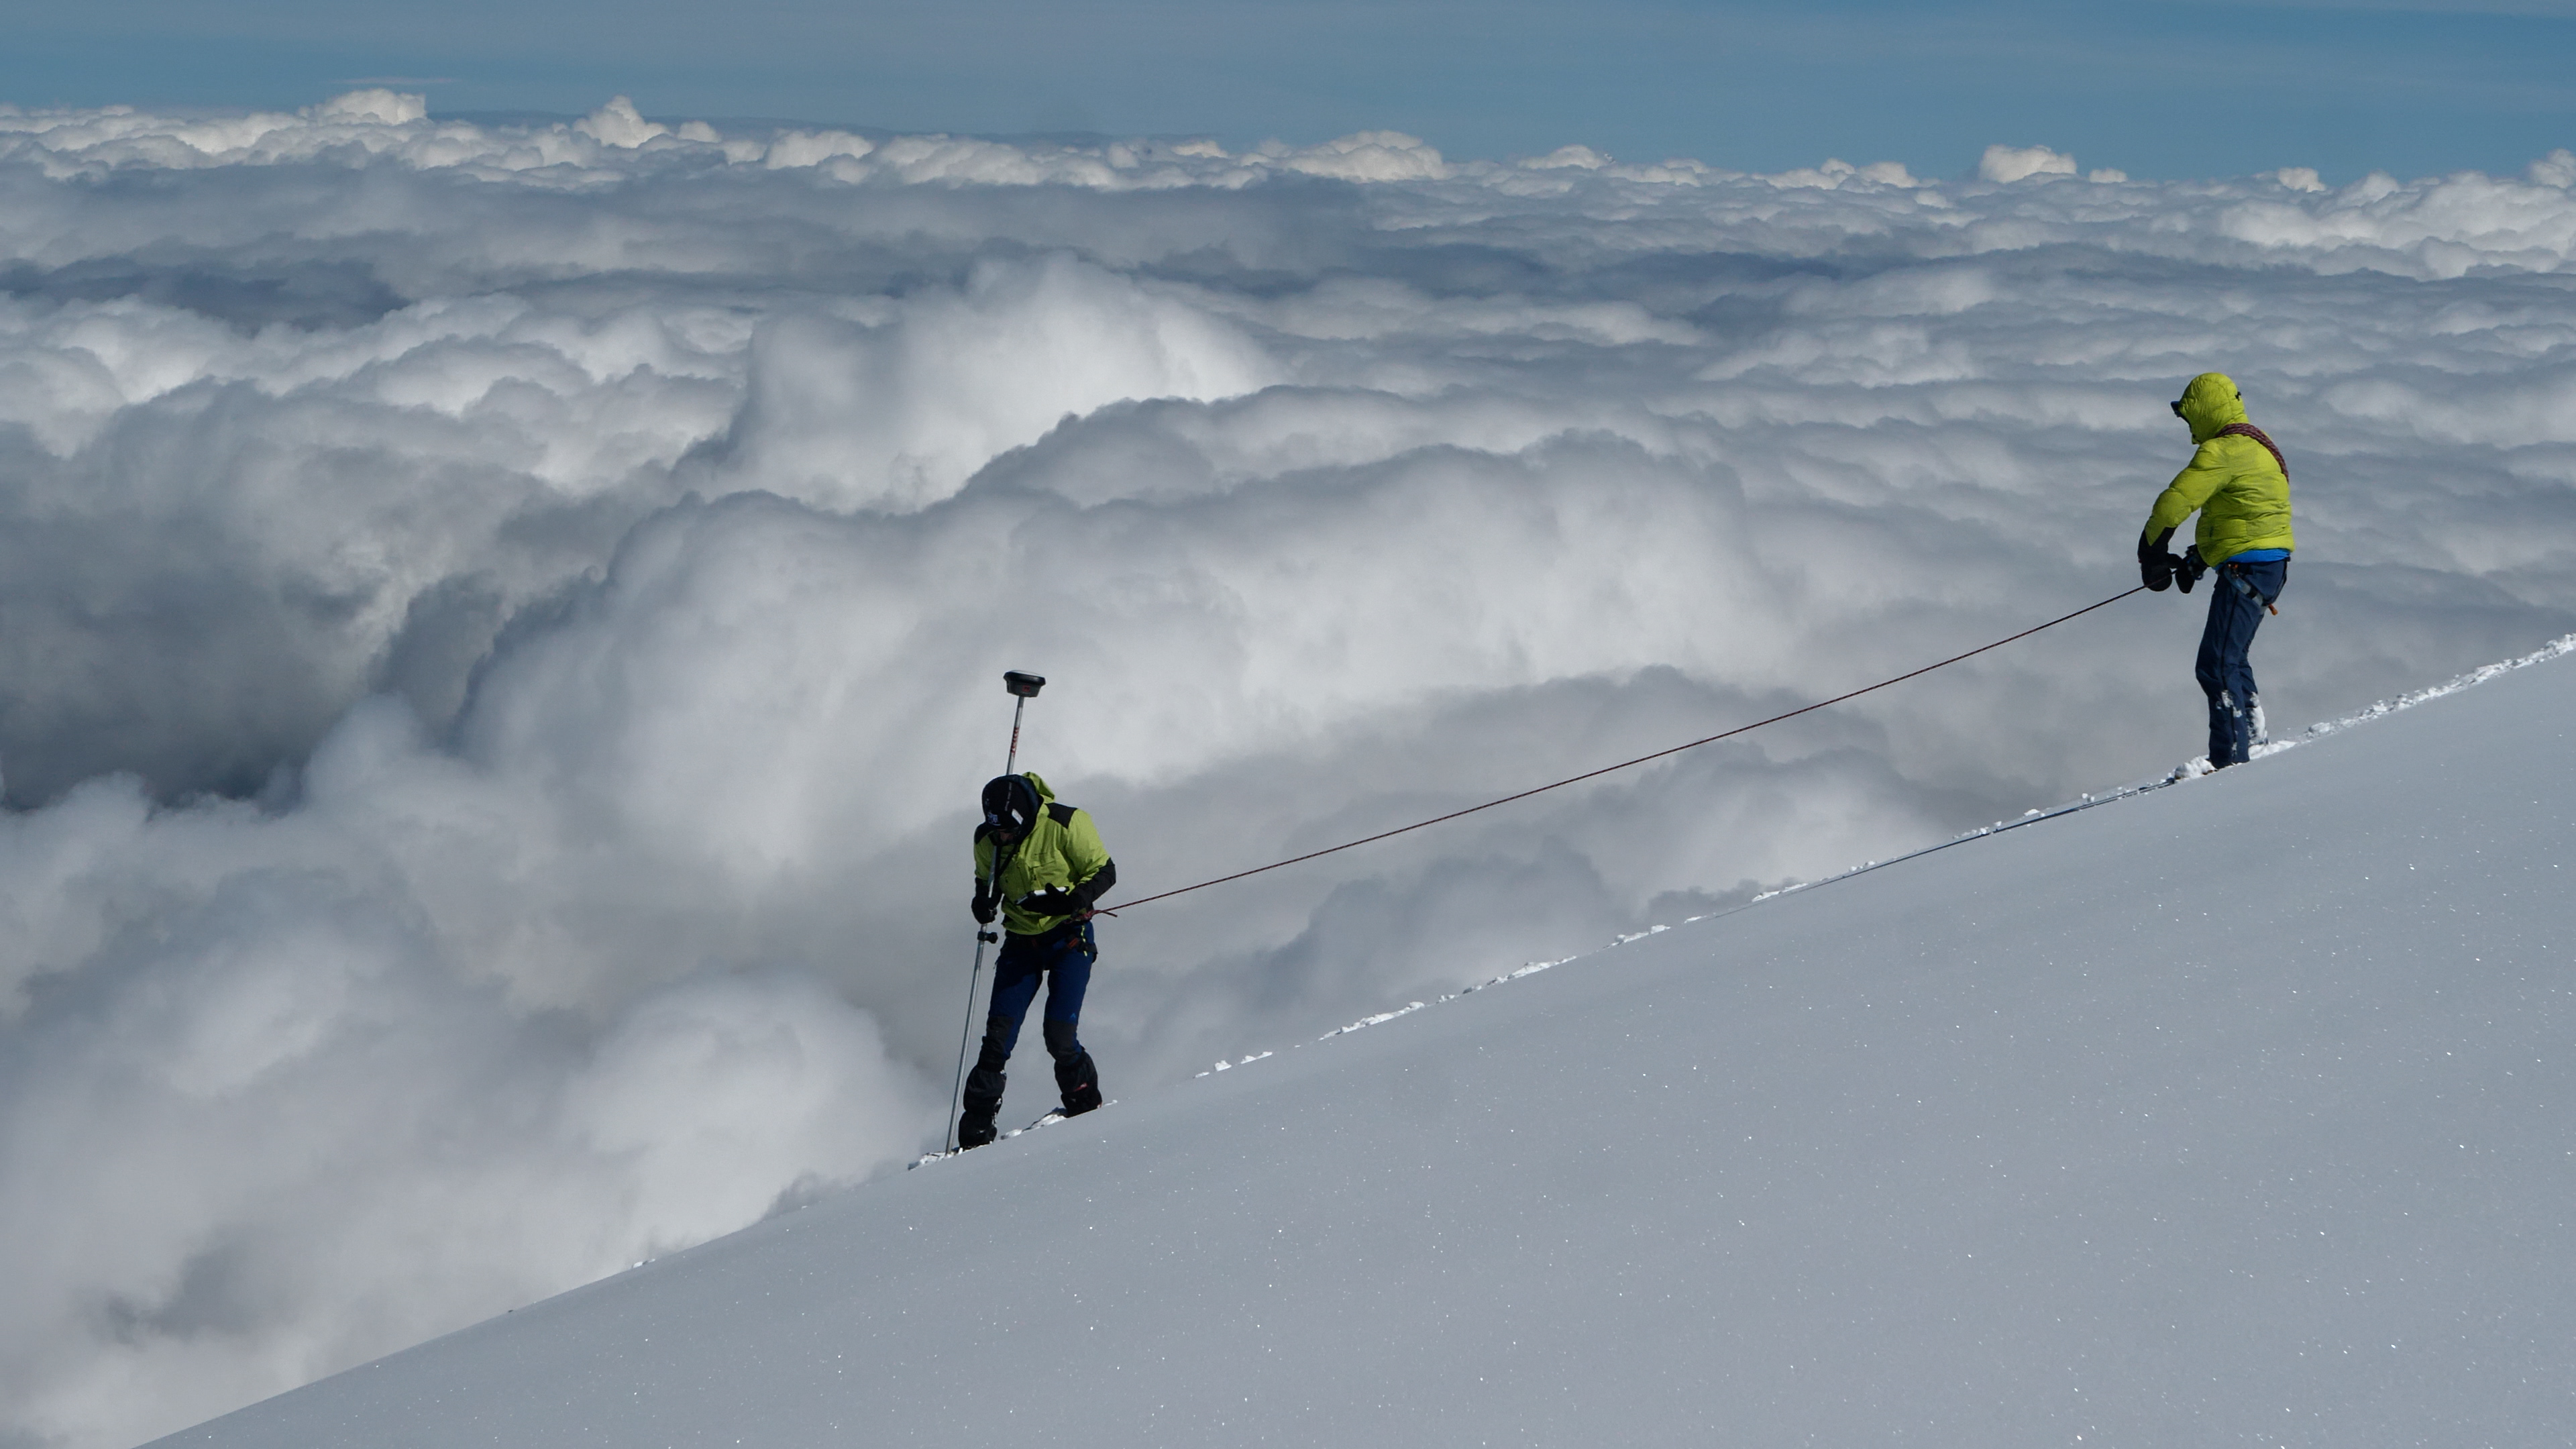 Le mont Blanc mesure 4805,59 mètres : qu'est-ce qui fait vraiment